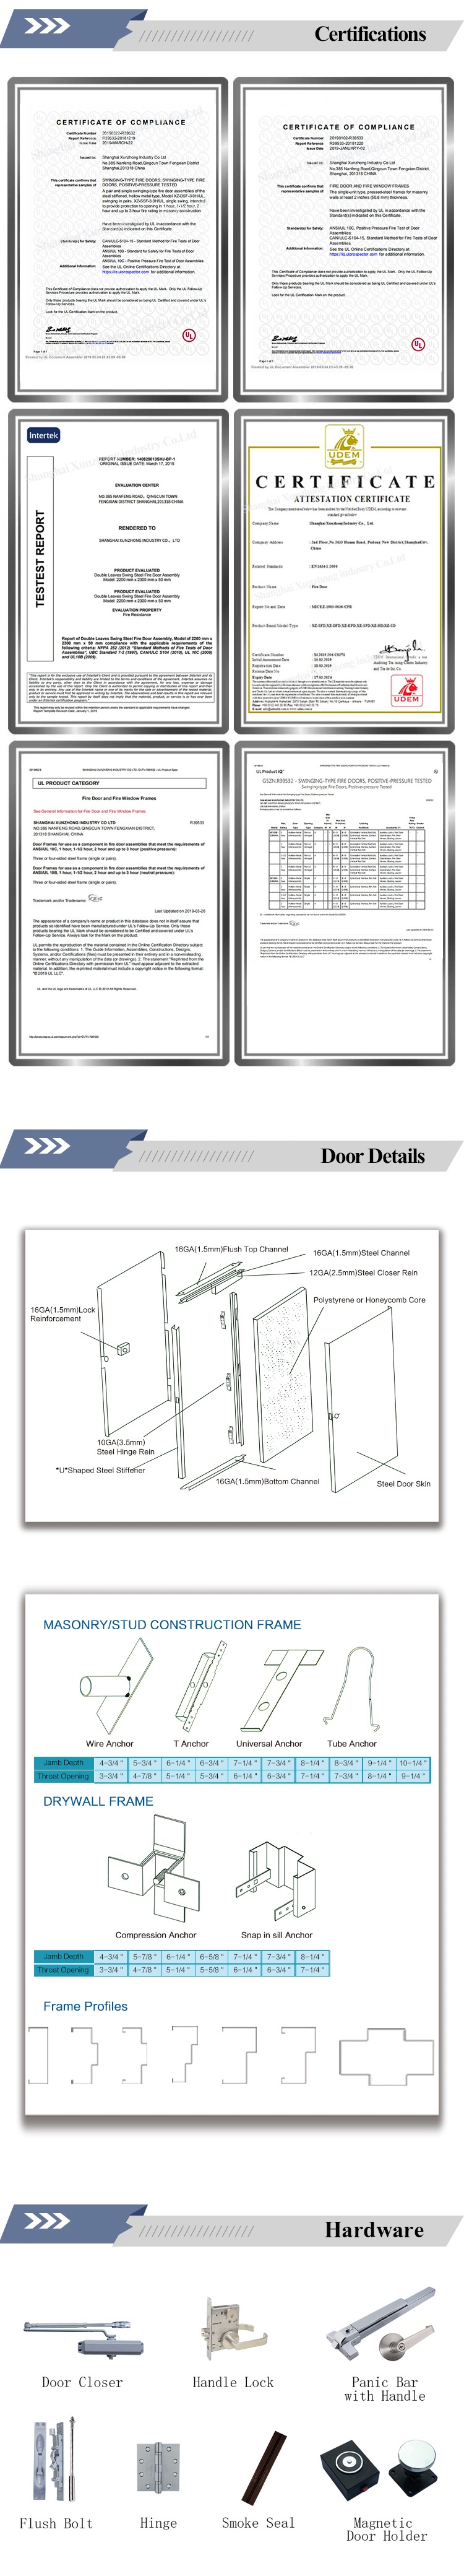 UL Steel Fire Door with Panic Push Bar/Metal Fire Door Prices